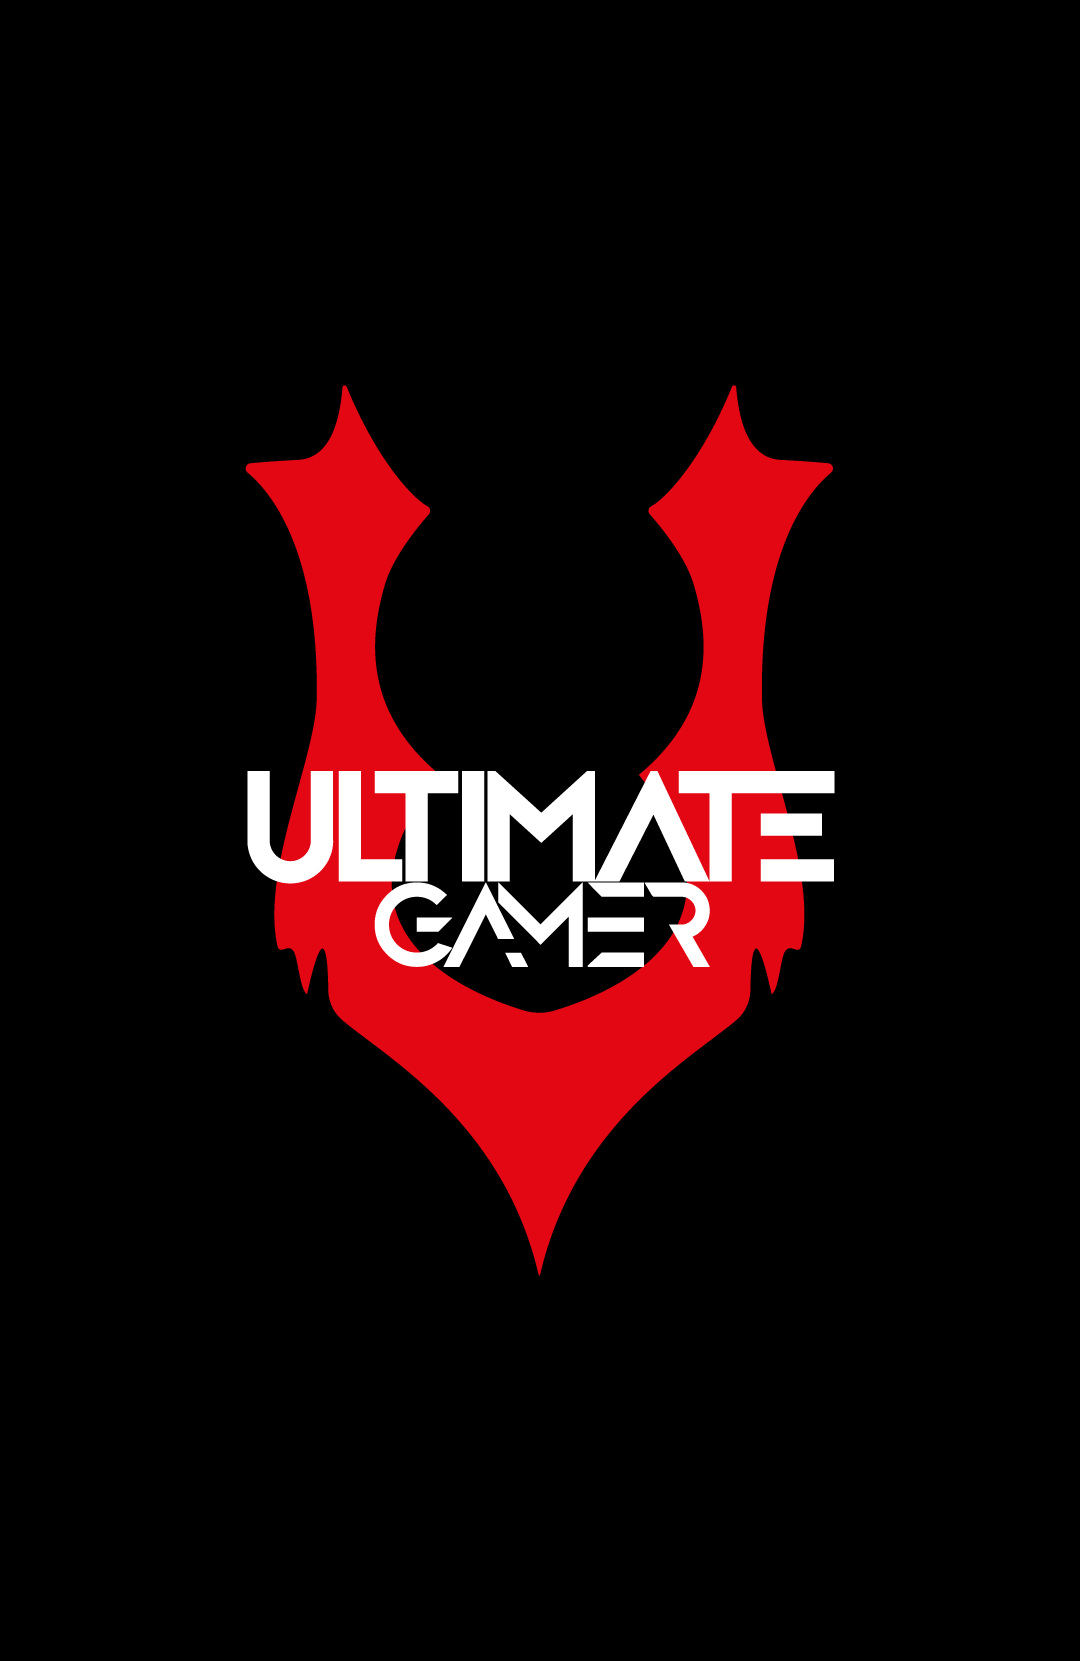 Ultimate Logo - Ultimate Gamer